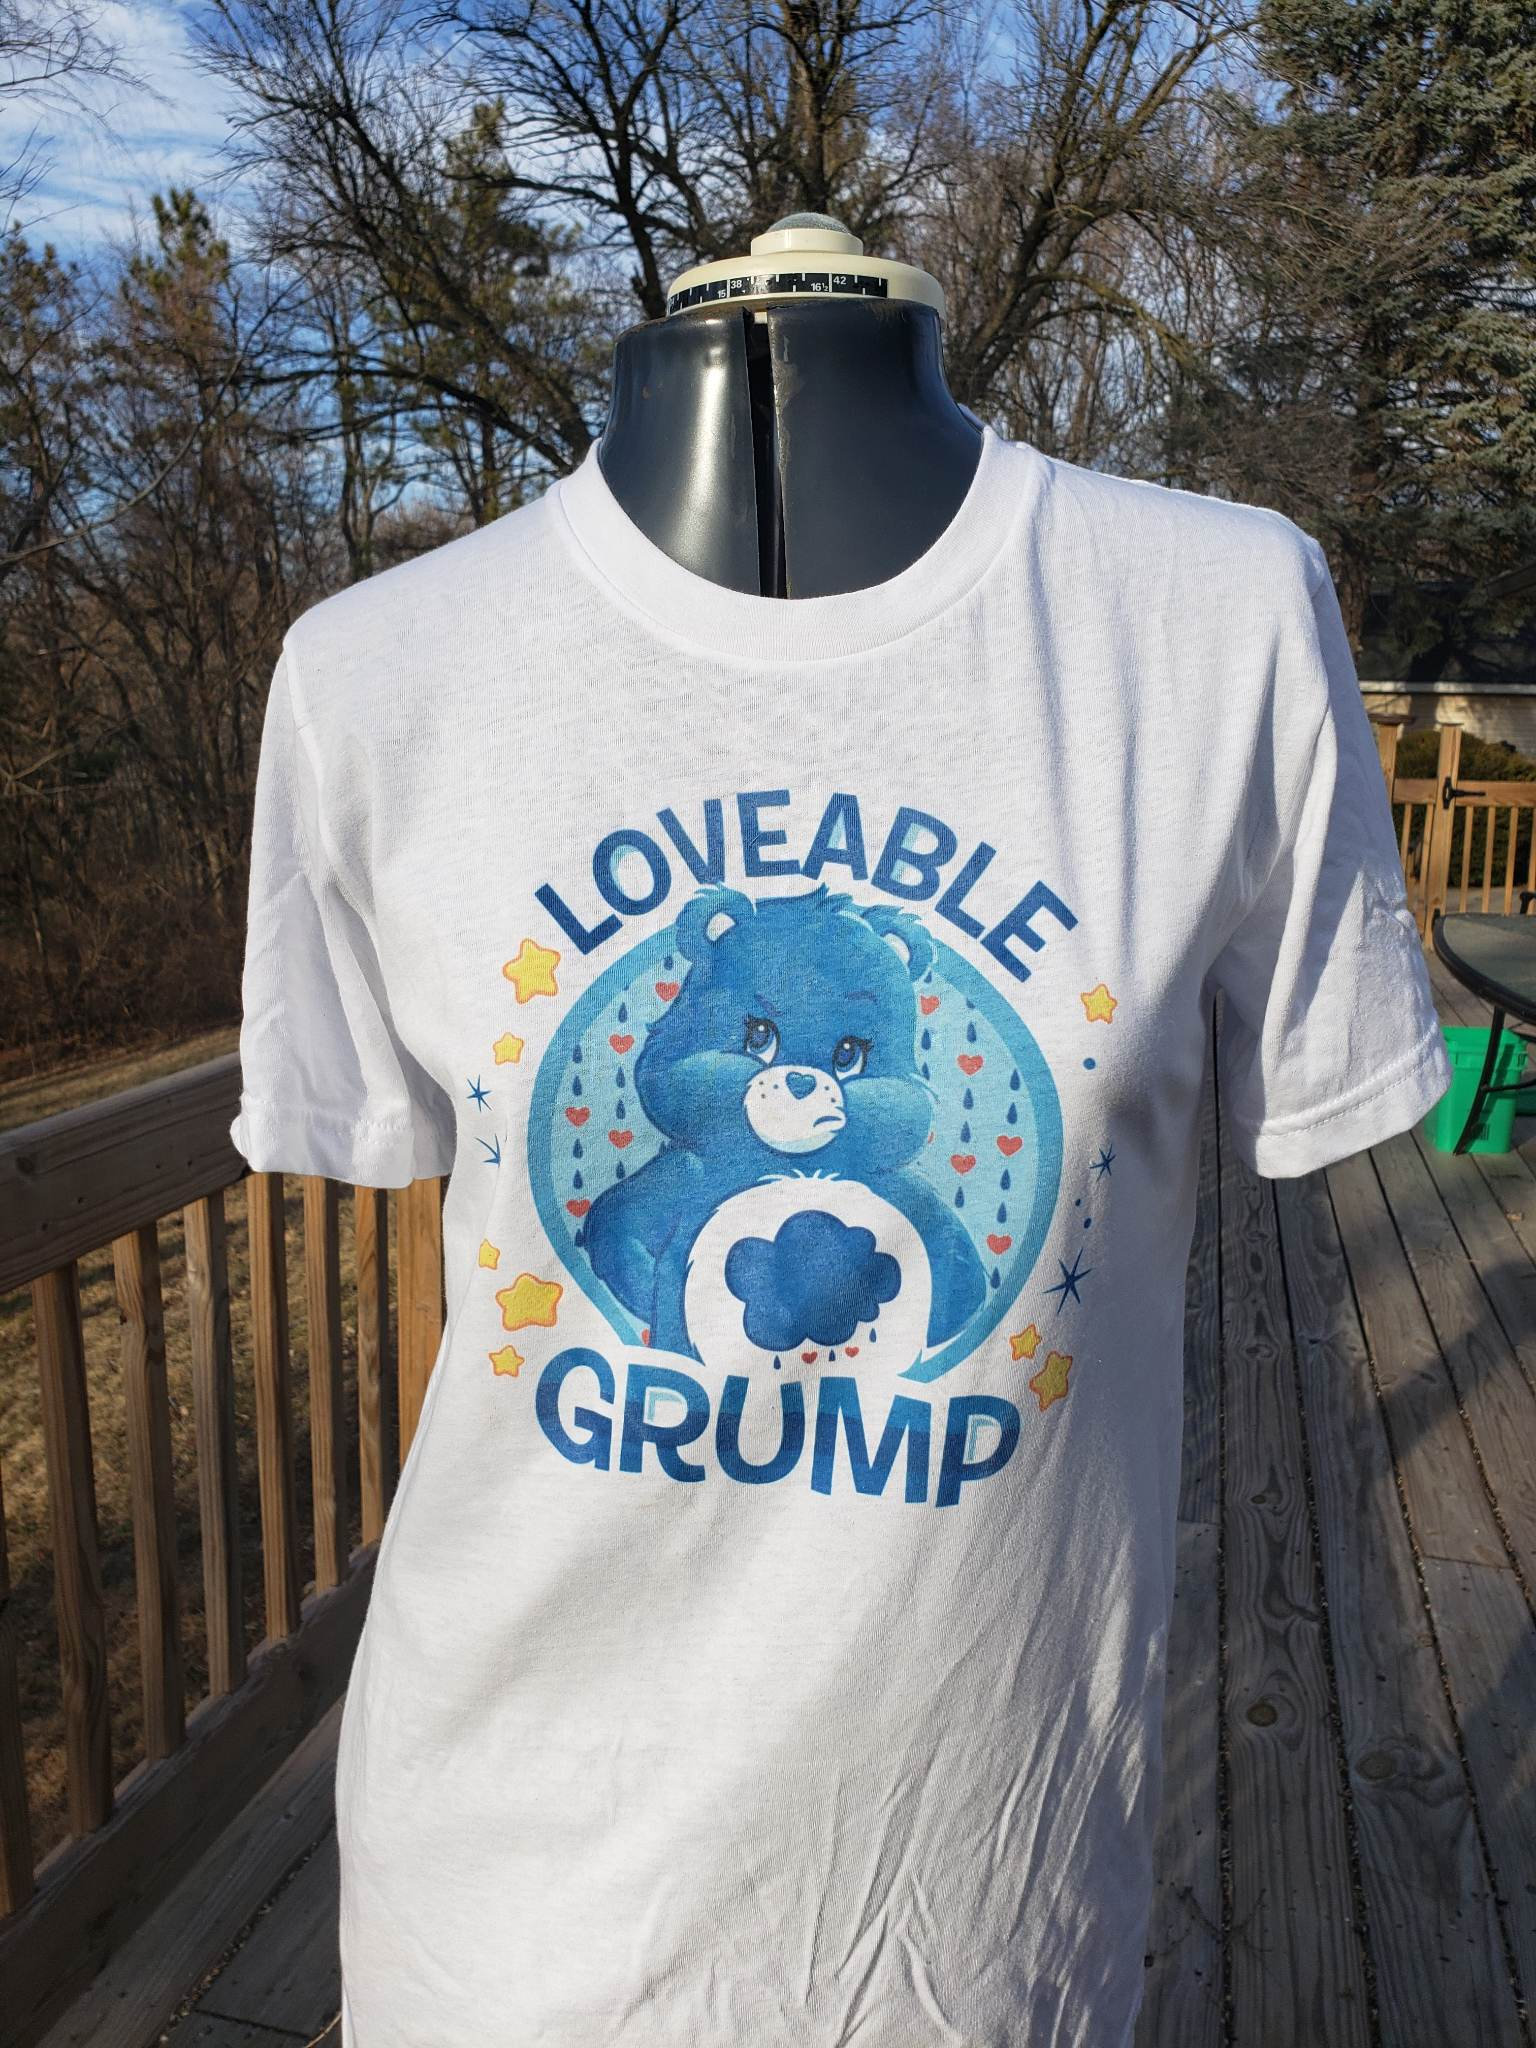 Care Bears Grumpy Bear T-Shirt 